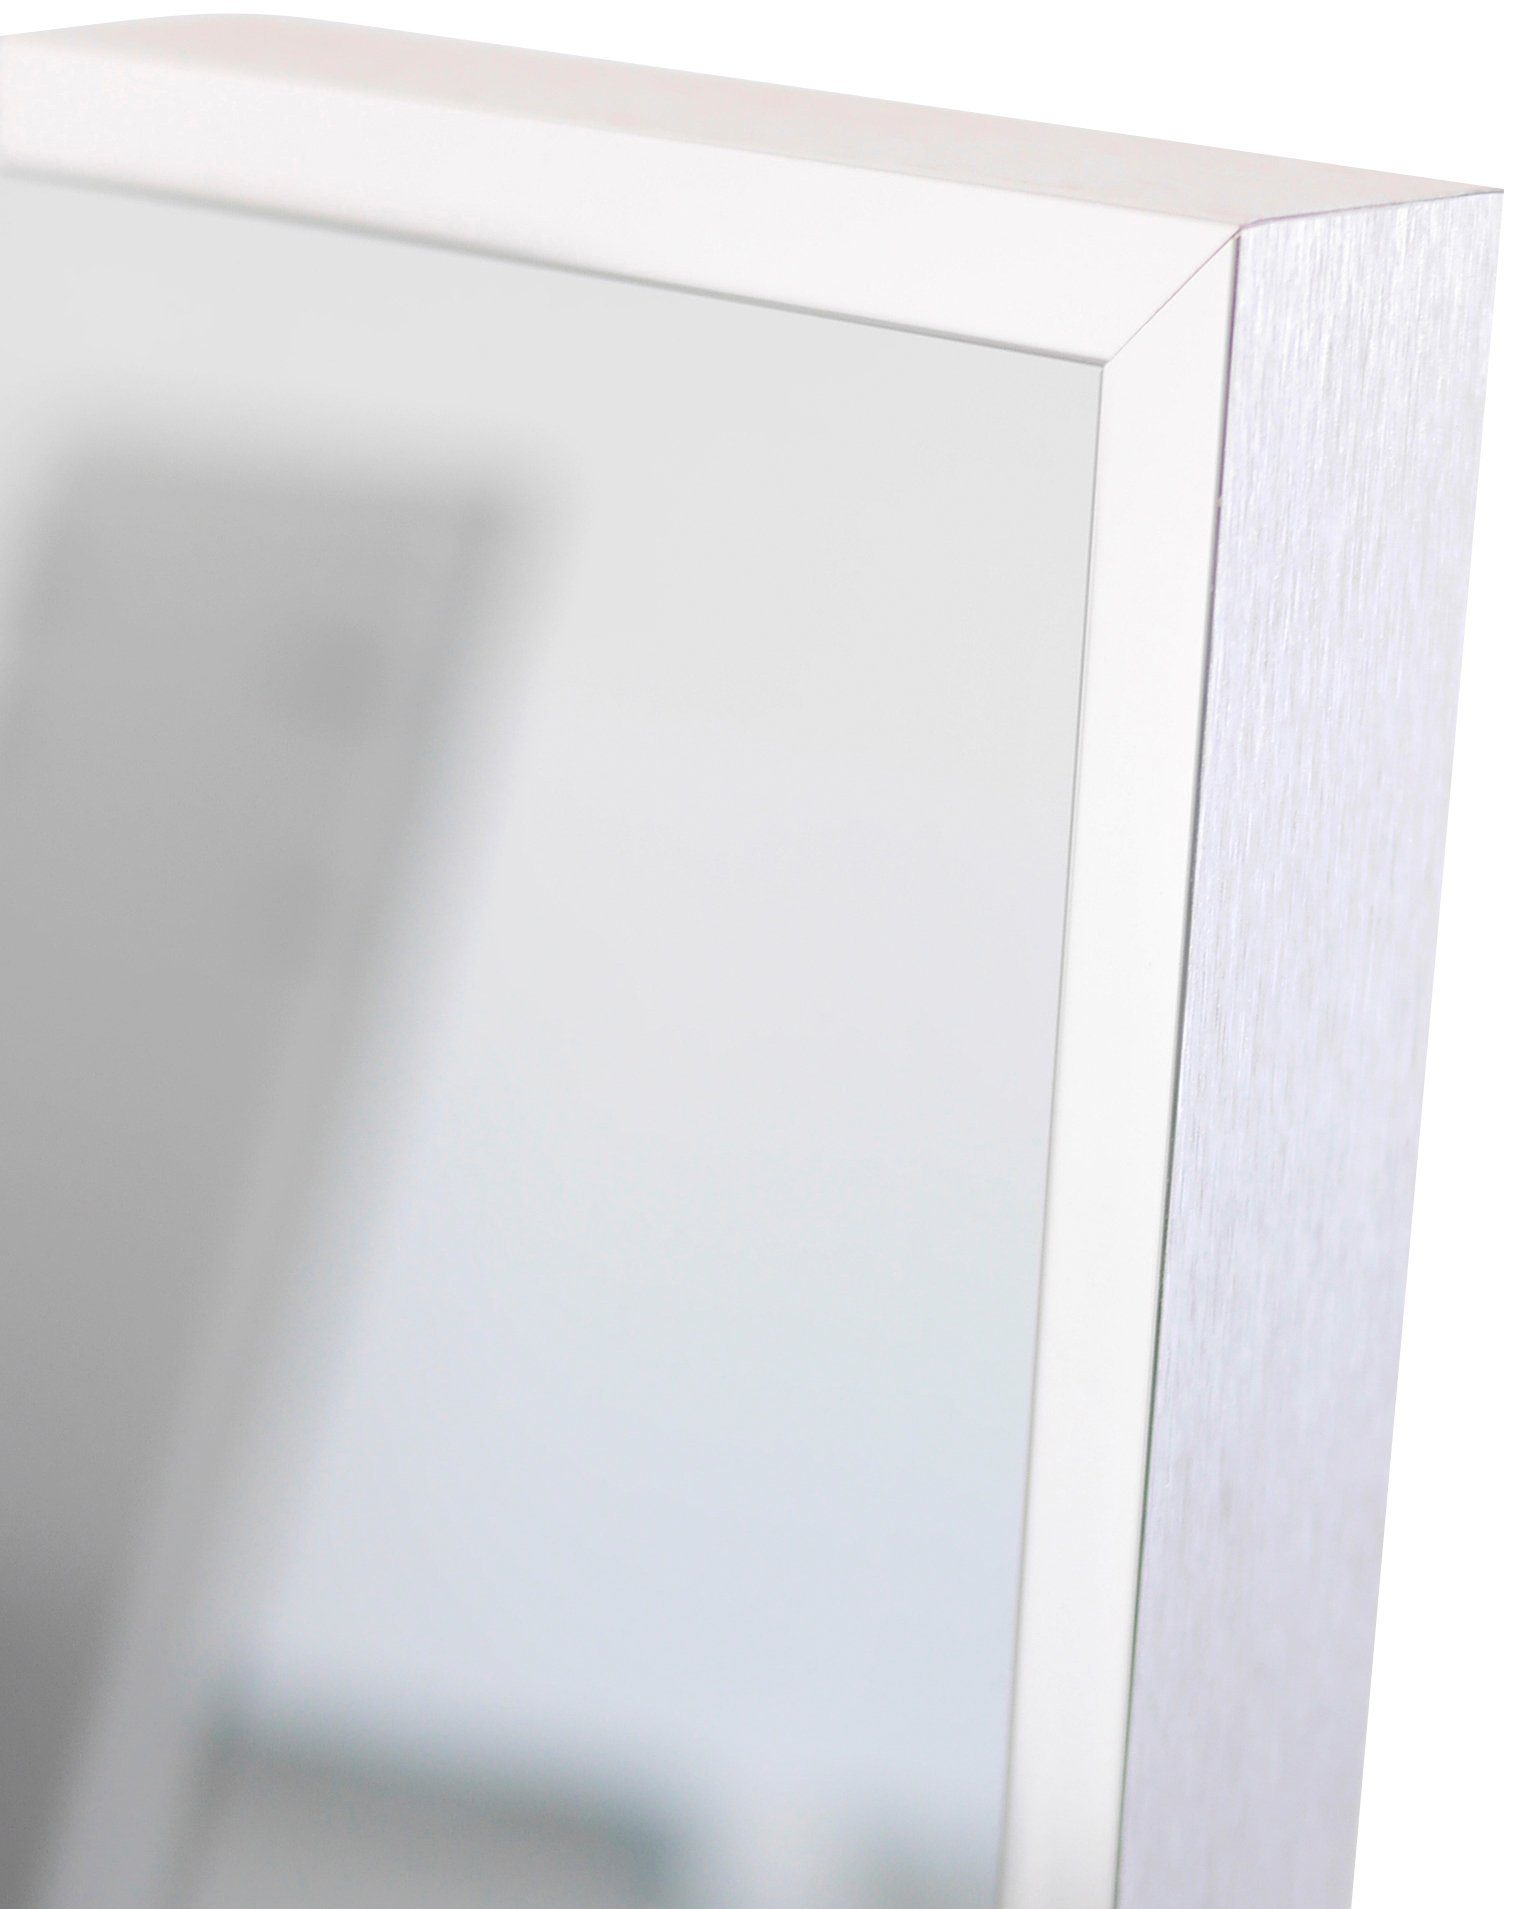 Vasner Zipris S 900 Infrarotheizung Spiegelheizung W, 900, mit Chrom-Rahmen